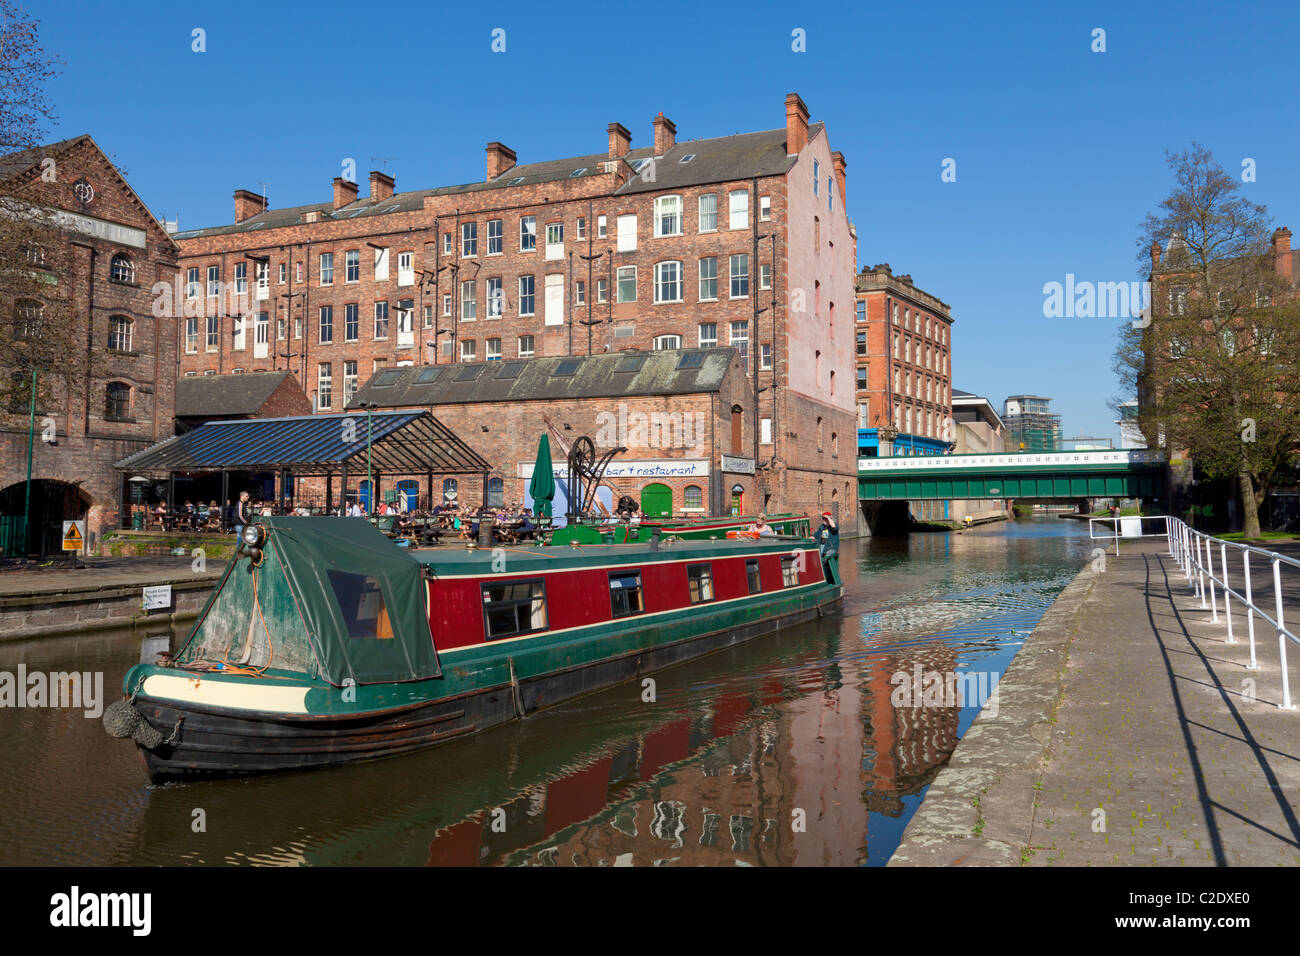 Chiatta o barca stretta sul Nottingham canal passando magazzini convertito nel centro della città di Nottingham REGNO UNITO Inghilterra GB EU Europe Foto Stock